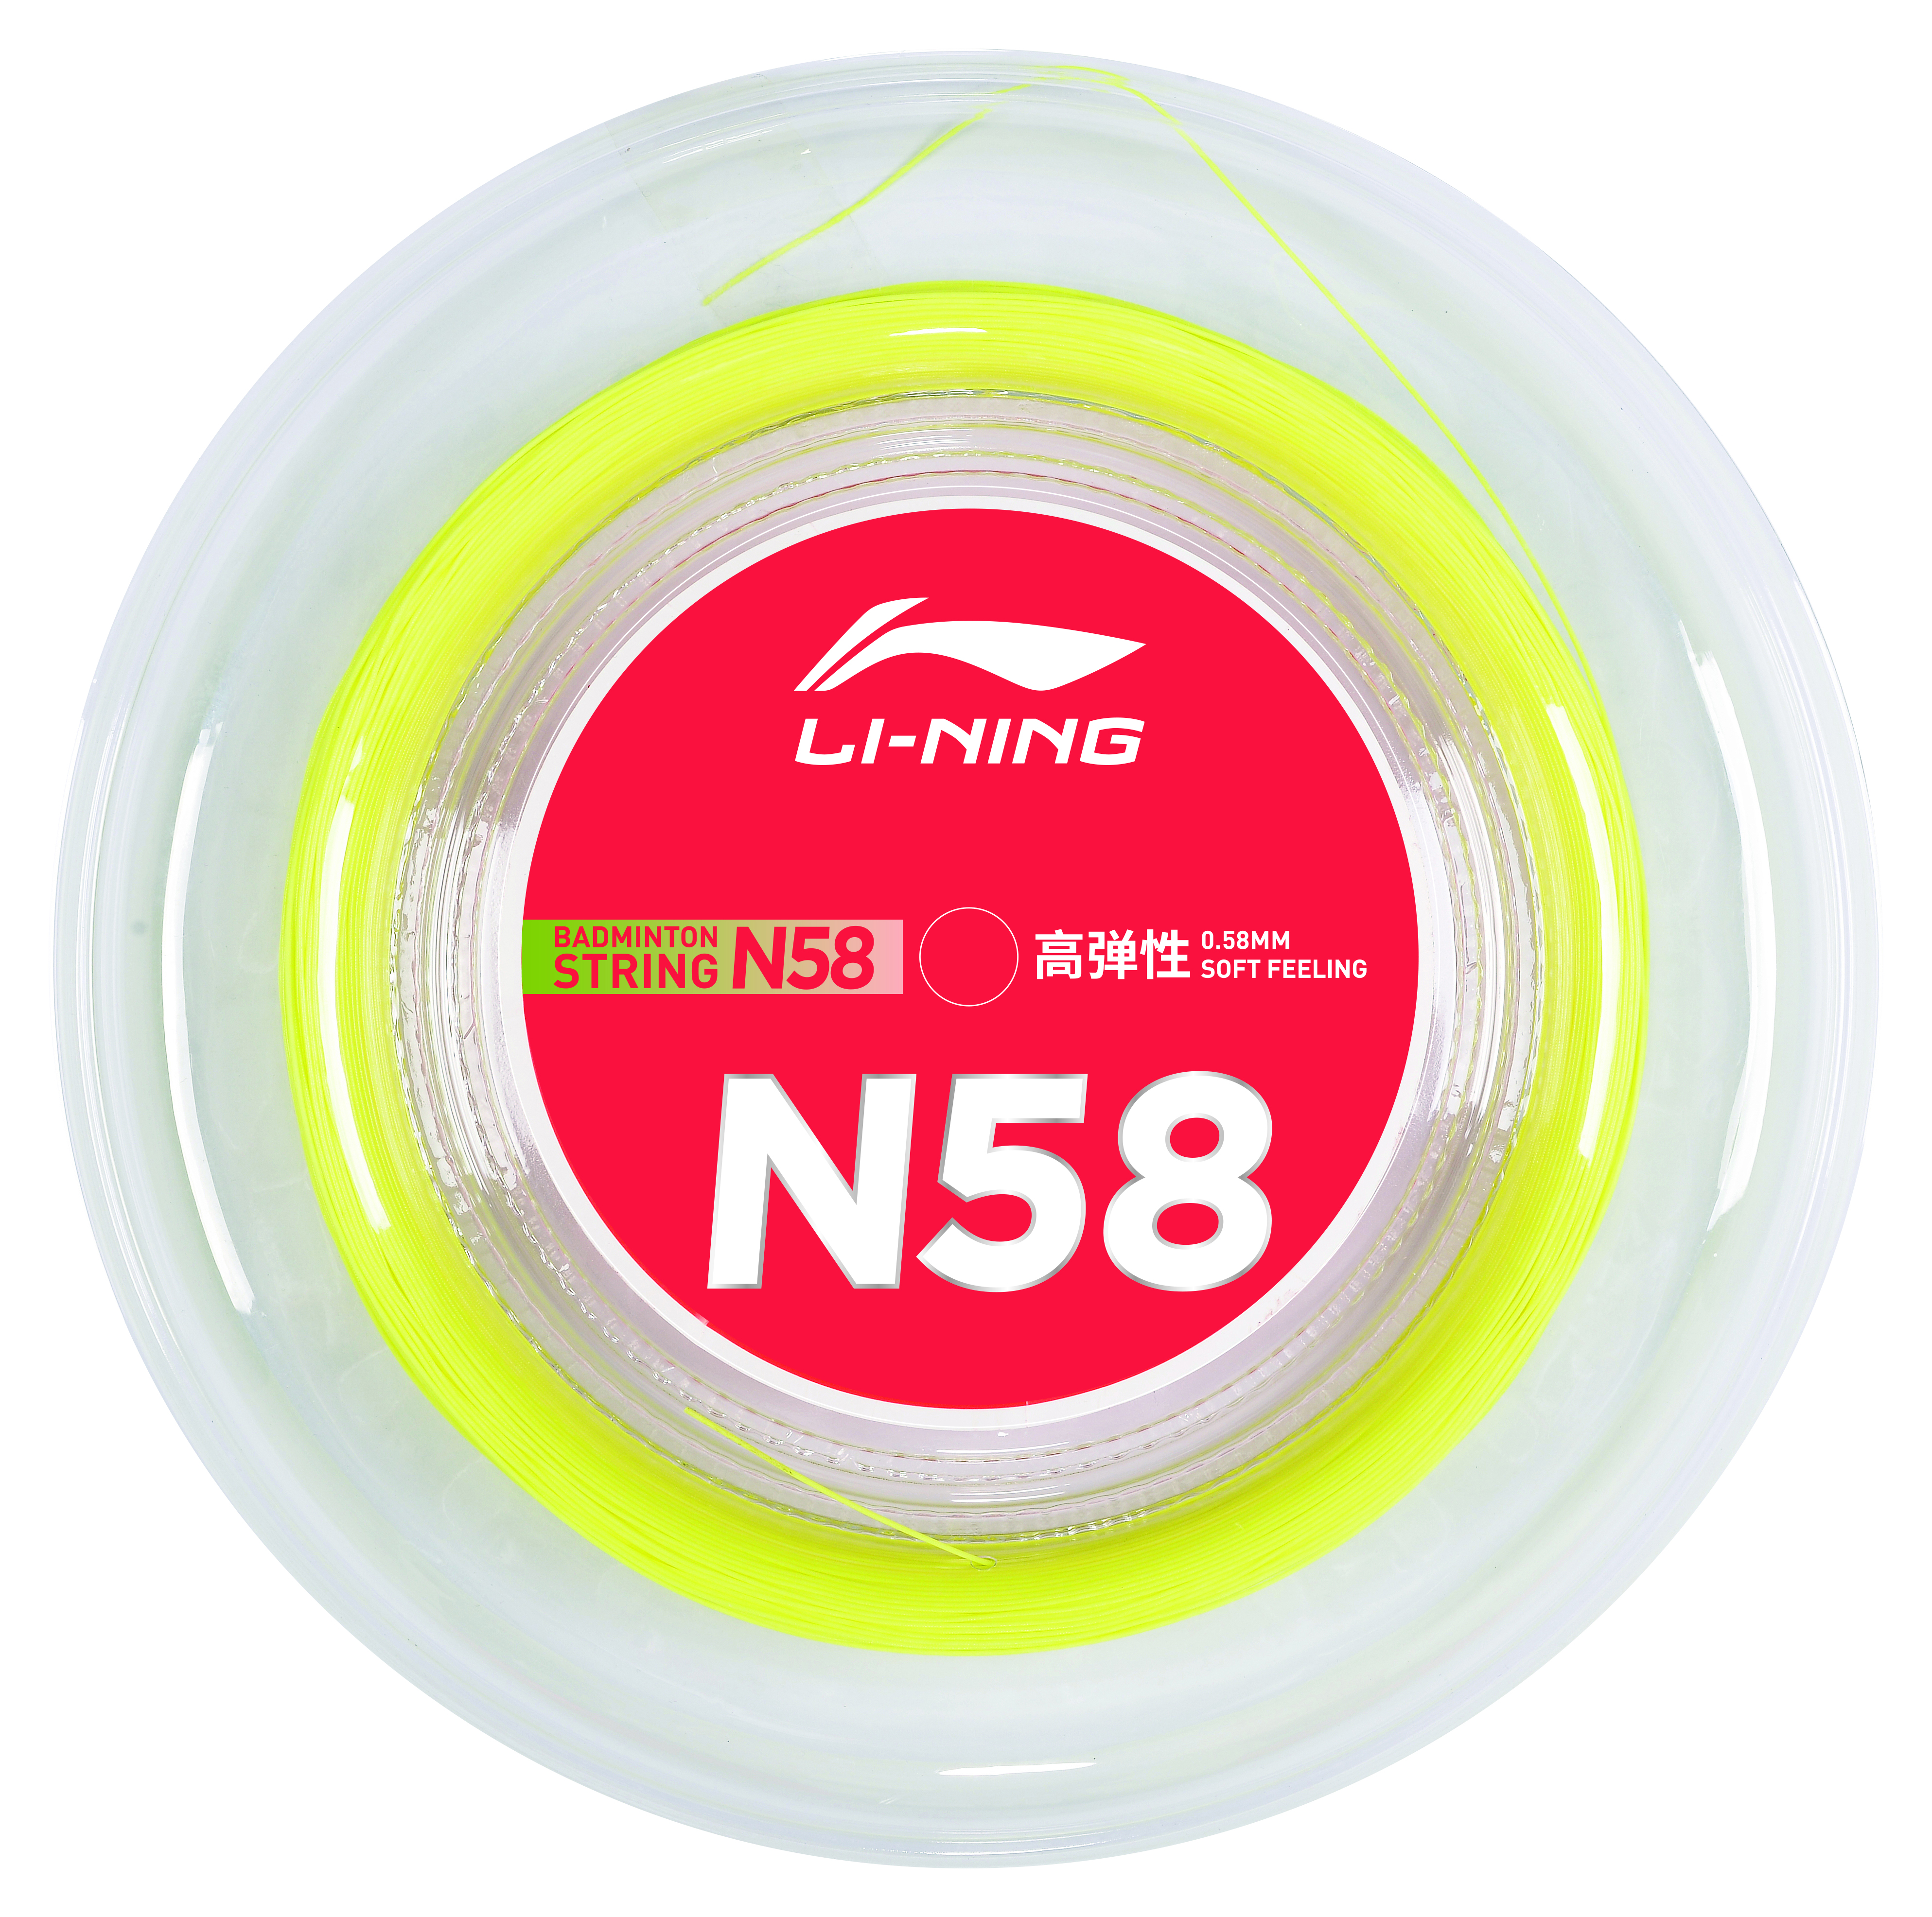 Li-Ning Badmintonsaite N58 Rolle mit 200m gelb